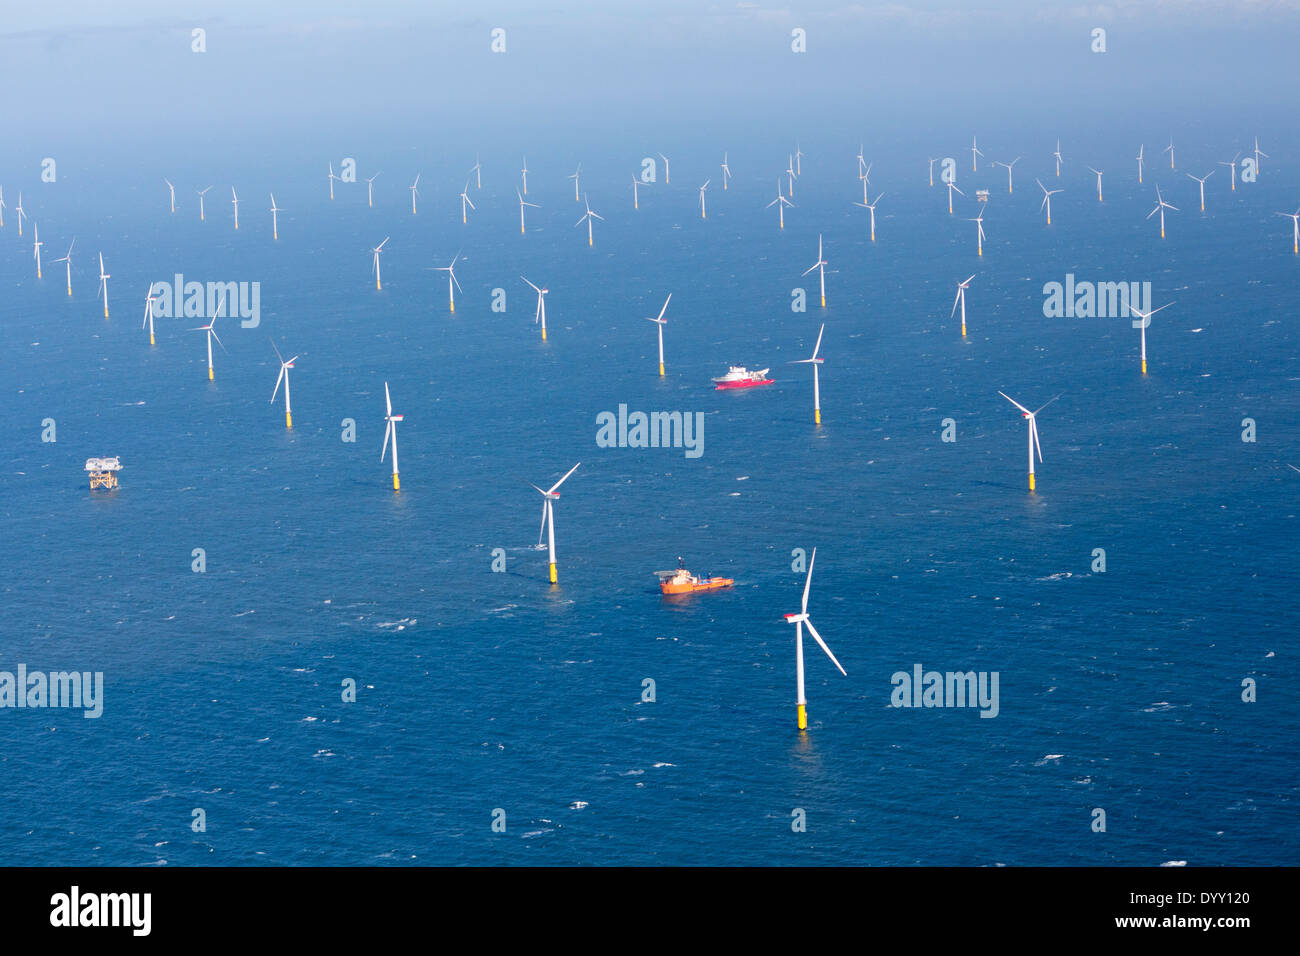 Gwynt y Mor offshore wind farm windfarm Near Llandudno Liverpool Bay Irish Sea North Wales UK Stock Photo